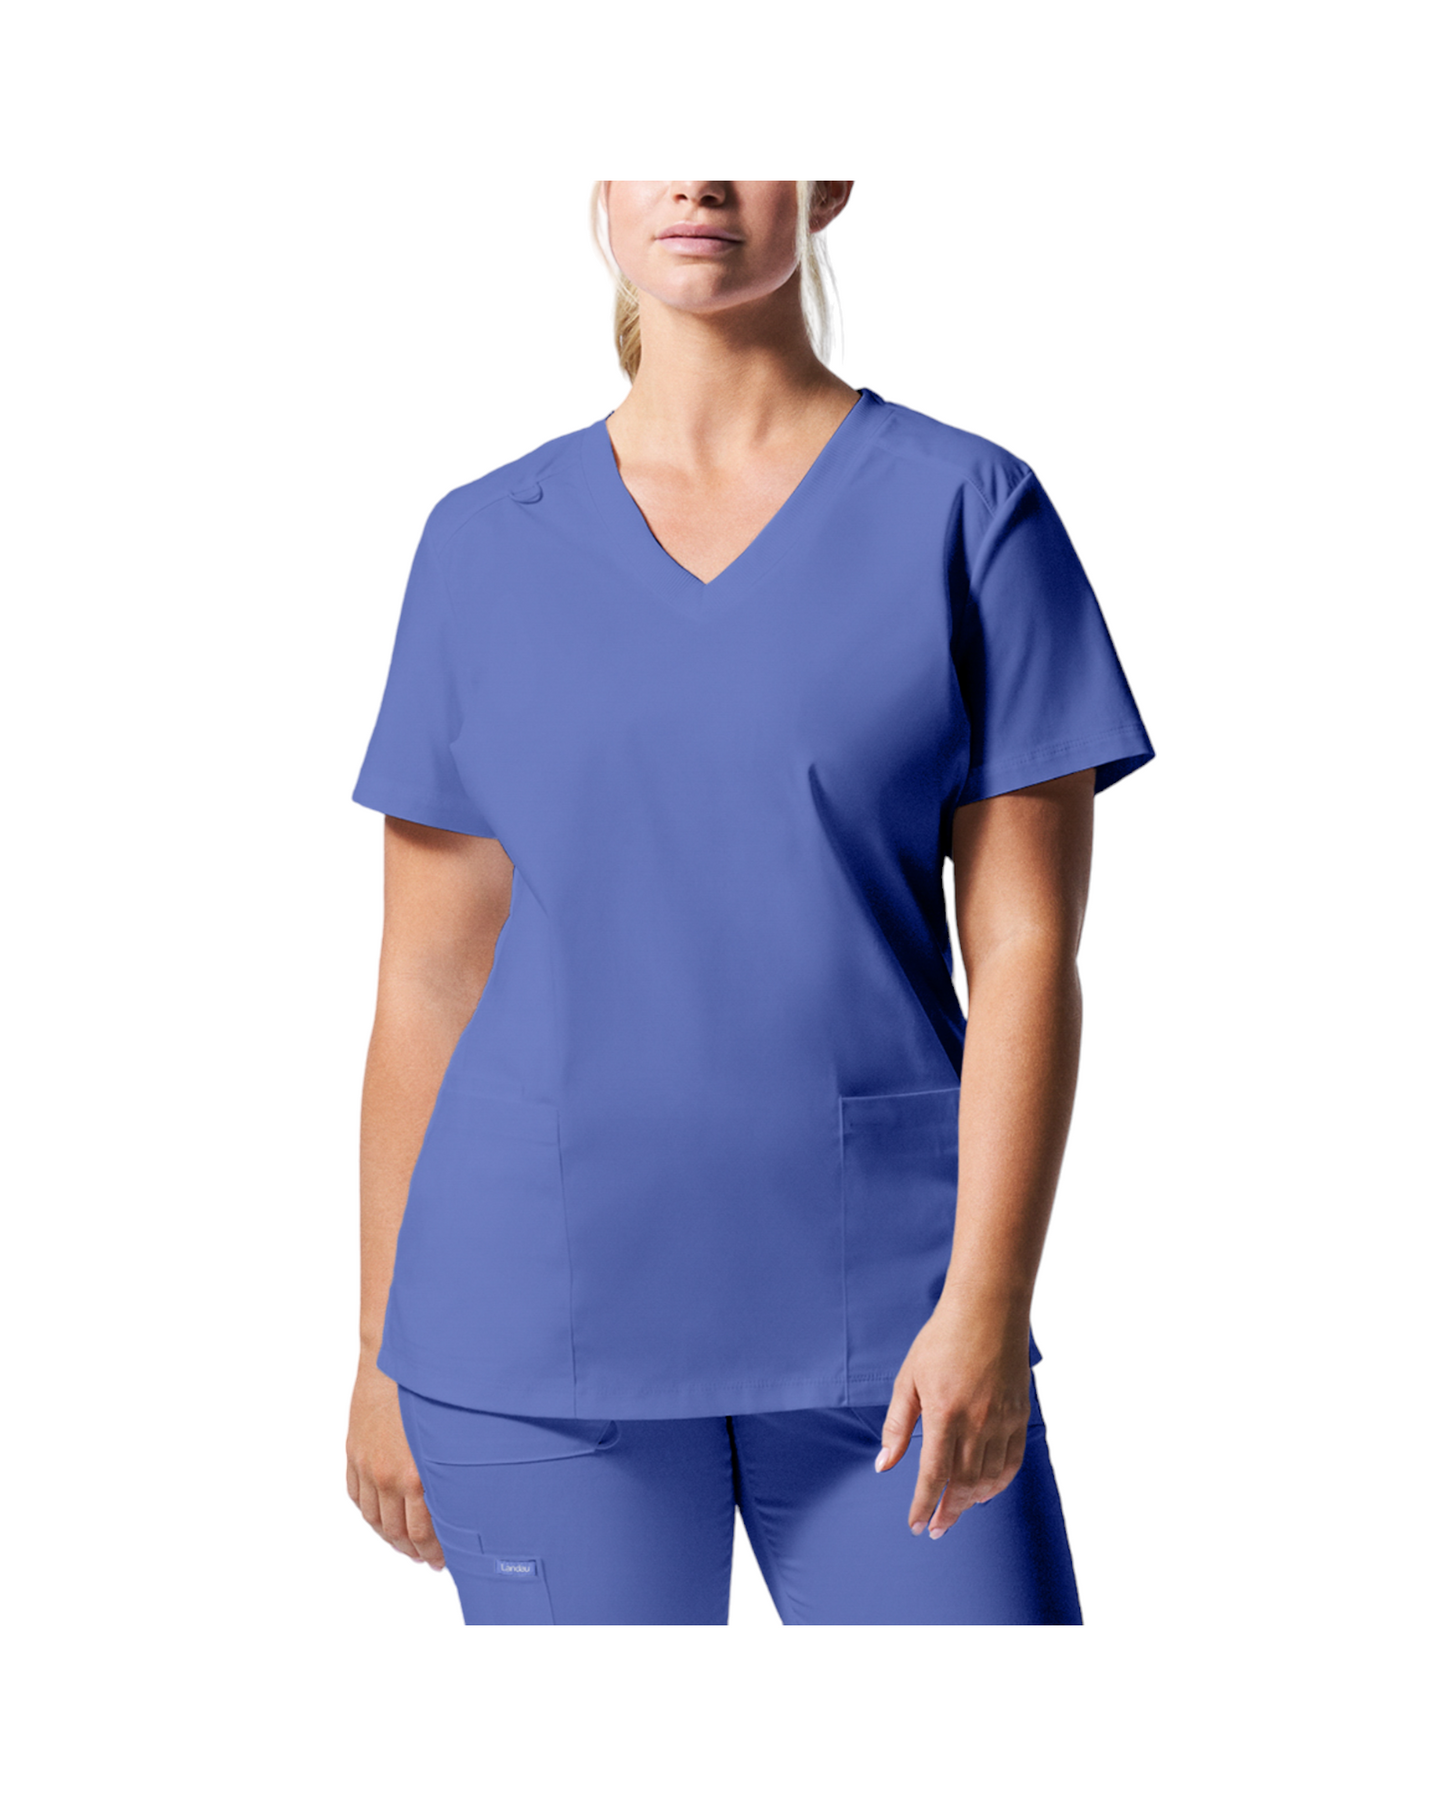 Uniforme de marque landau pour femmes taille plus. Travailleuses du domaine de la santé. LT105-OS couleur Bleu ciel, col en V.